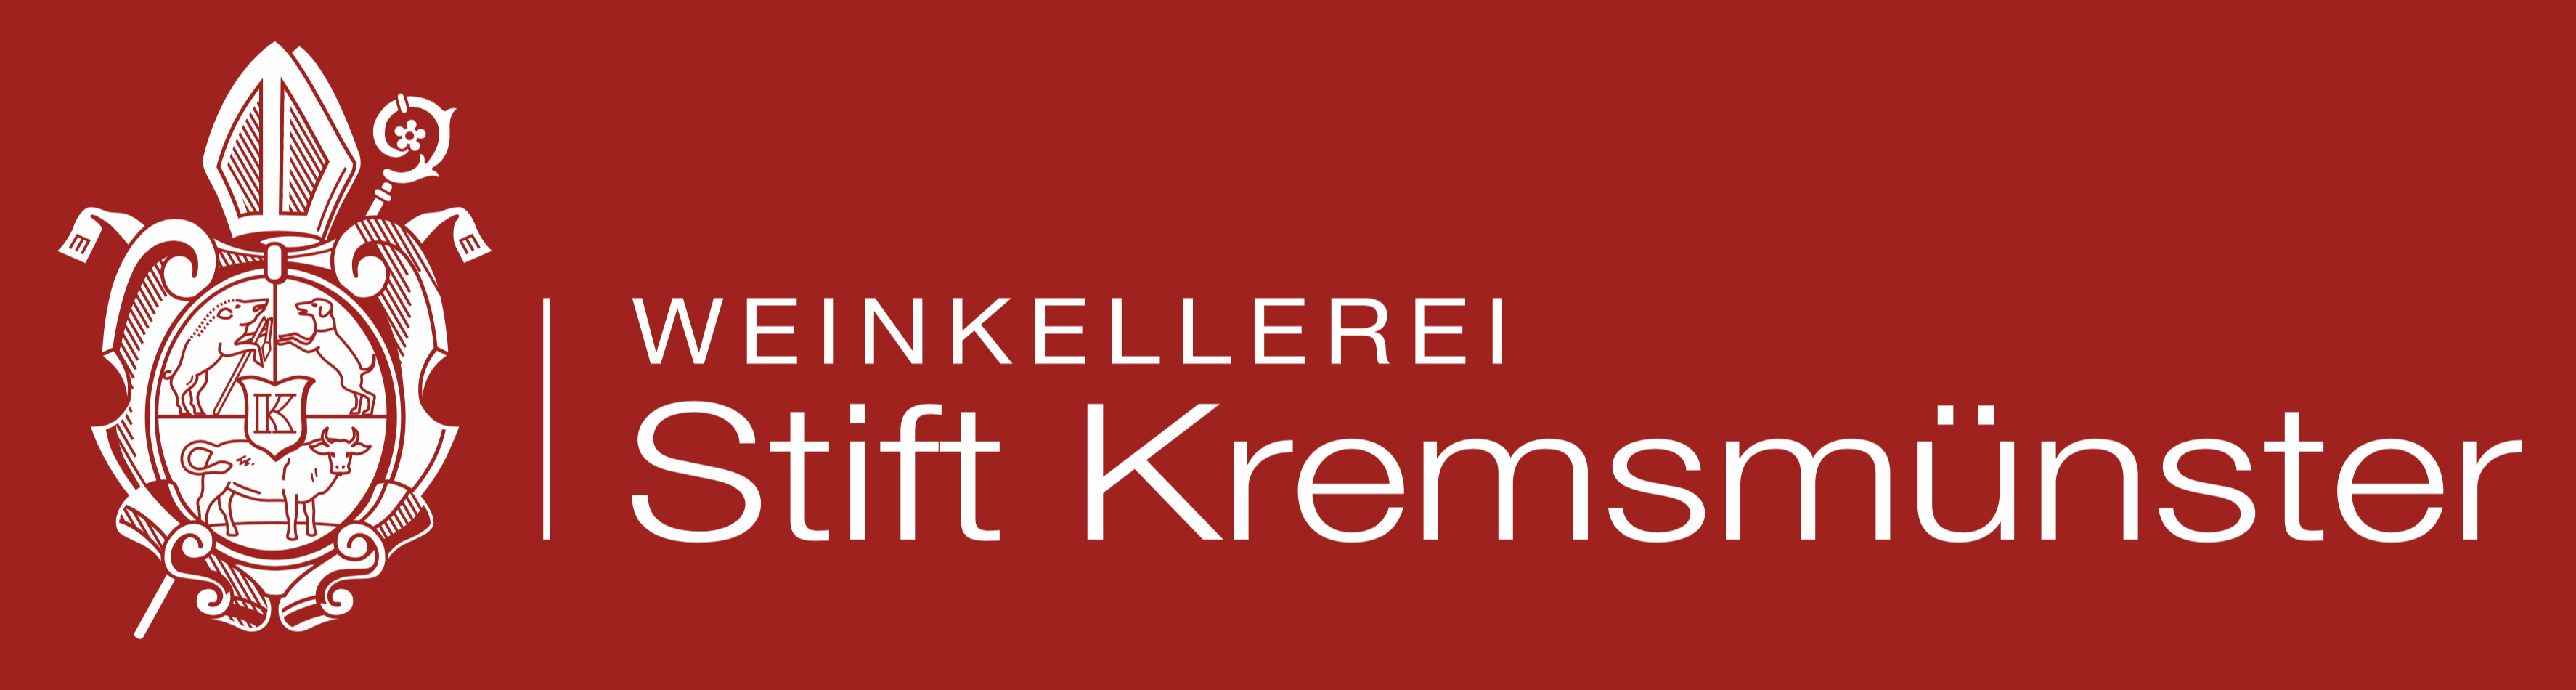 Weinkellerei Stift Kremsmünster Logo